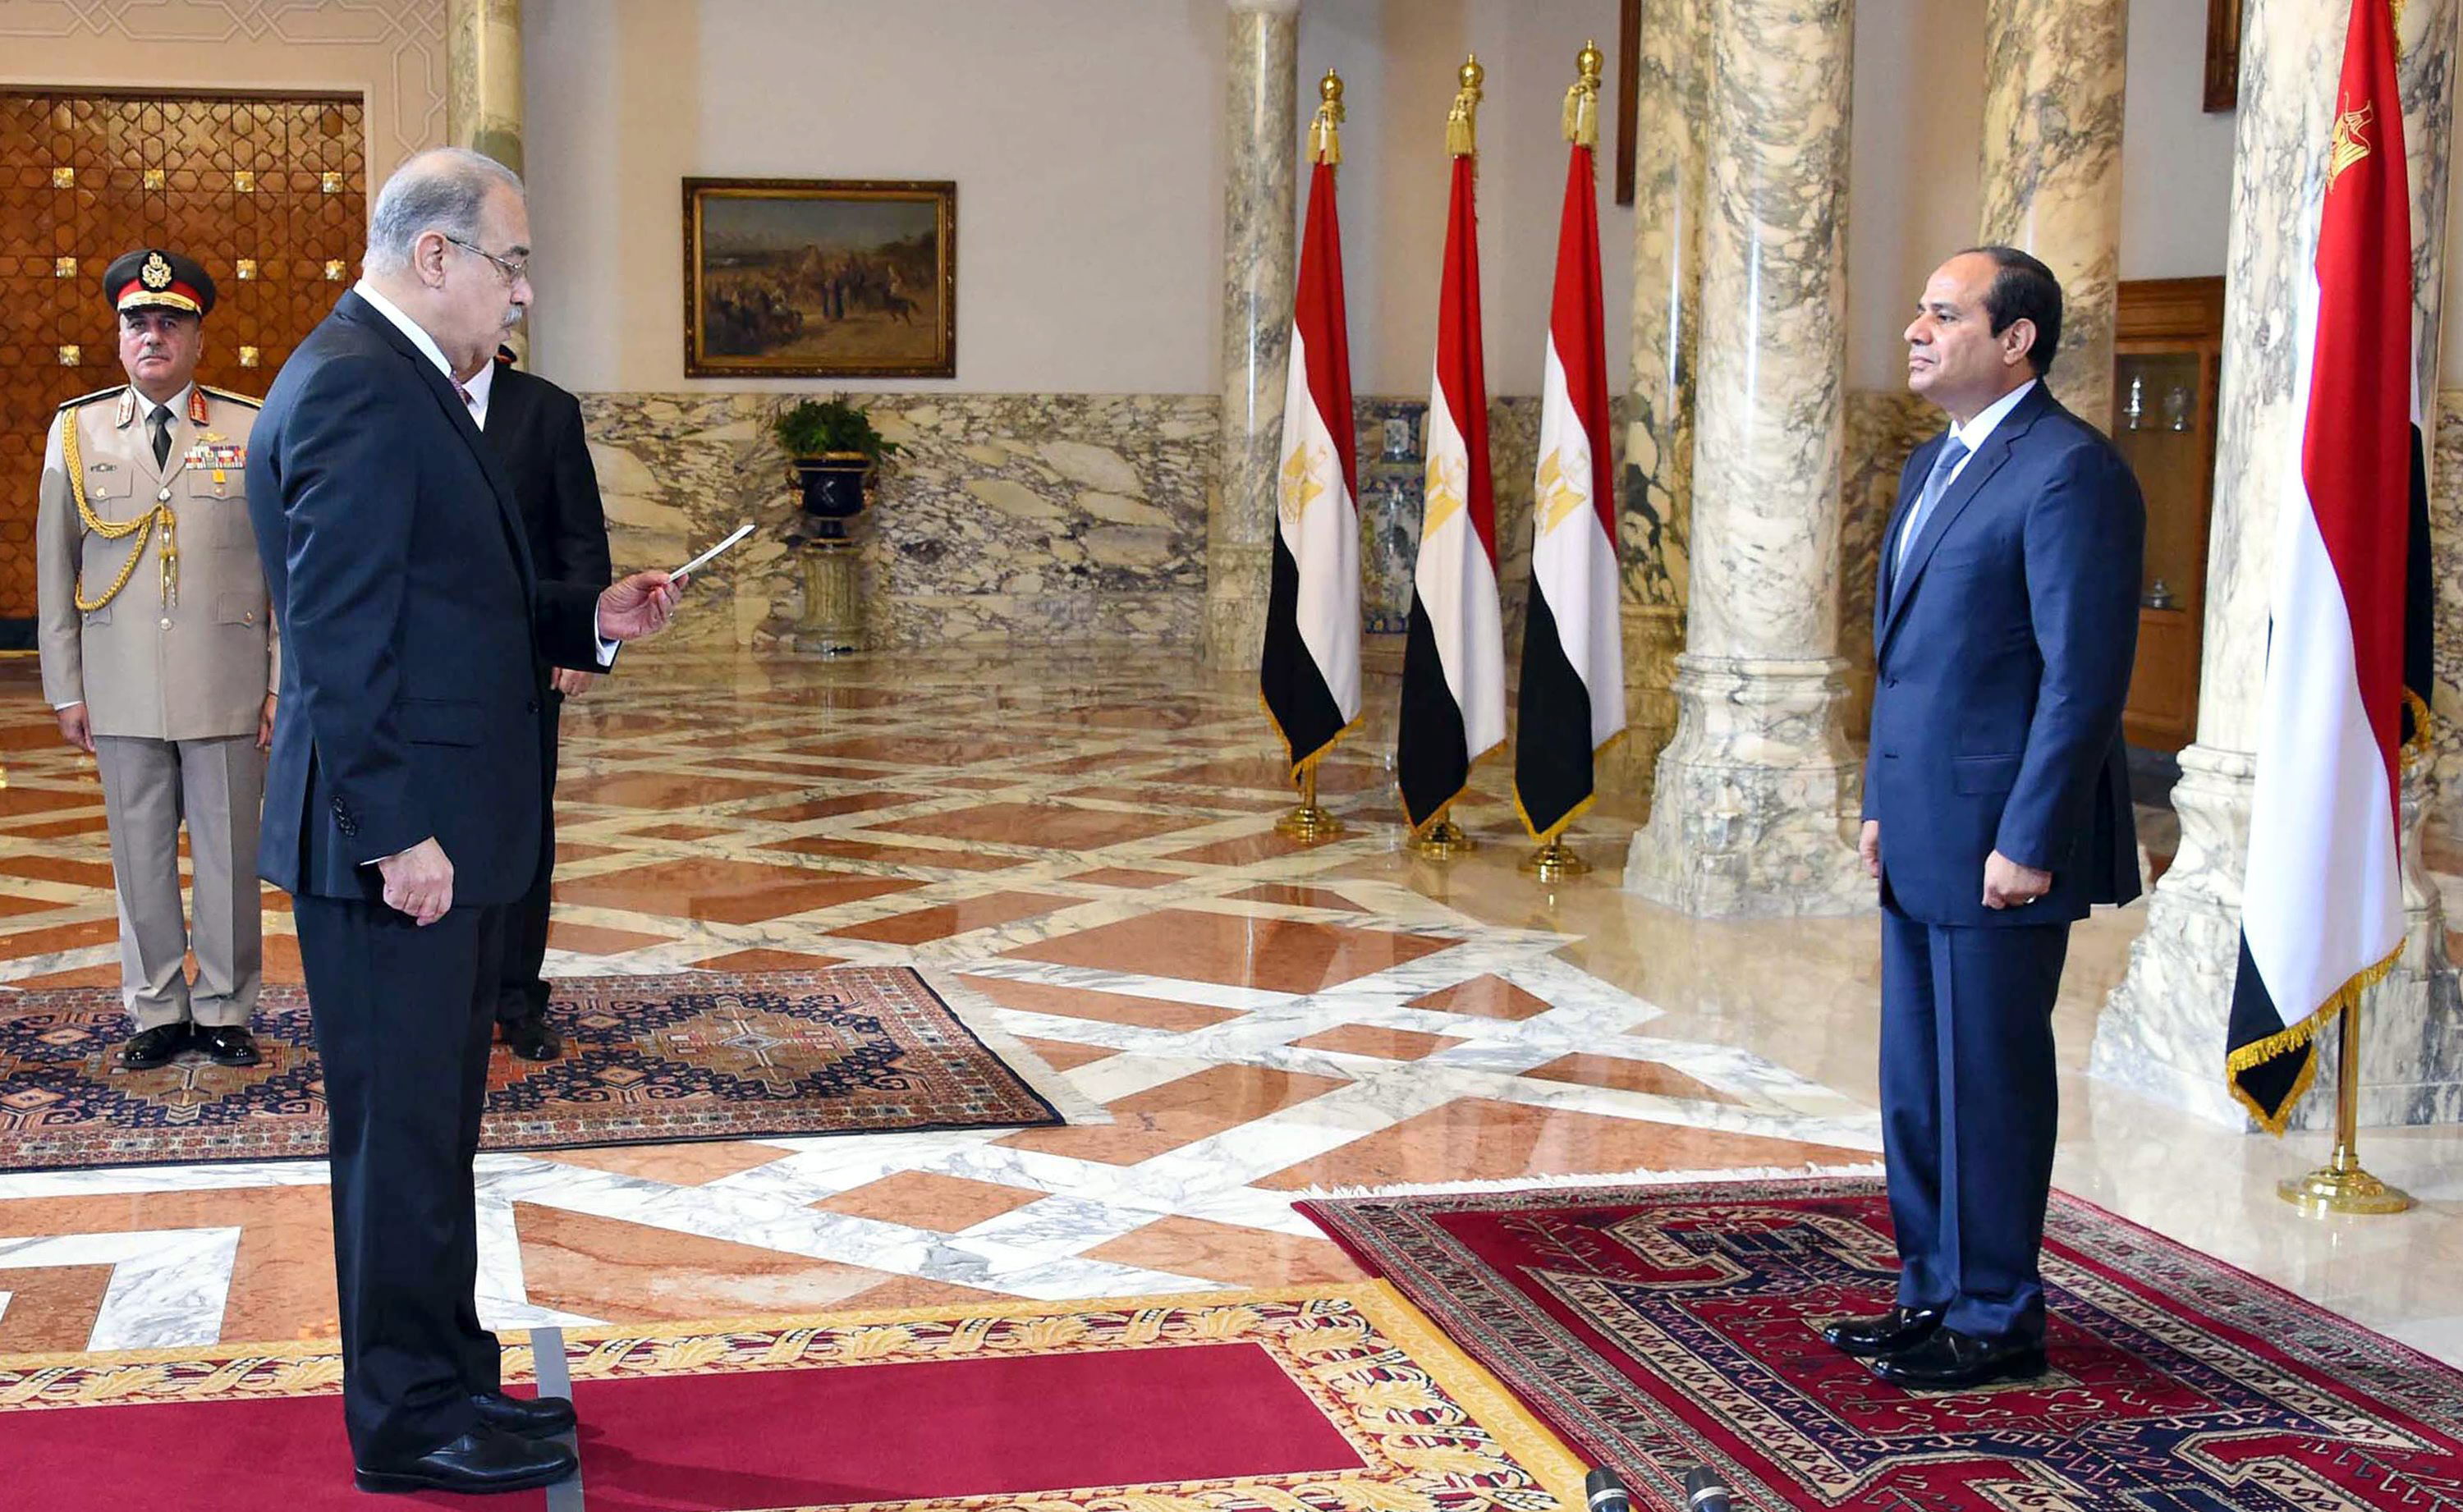 El nuevo mandatario se lanzó a la política luego de protagonizar el golpe de Estado en 2013 contra el entonces mandatario Mohamed Mursi.